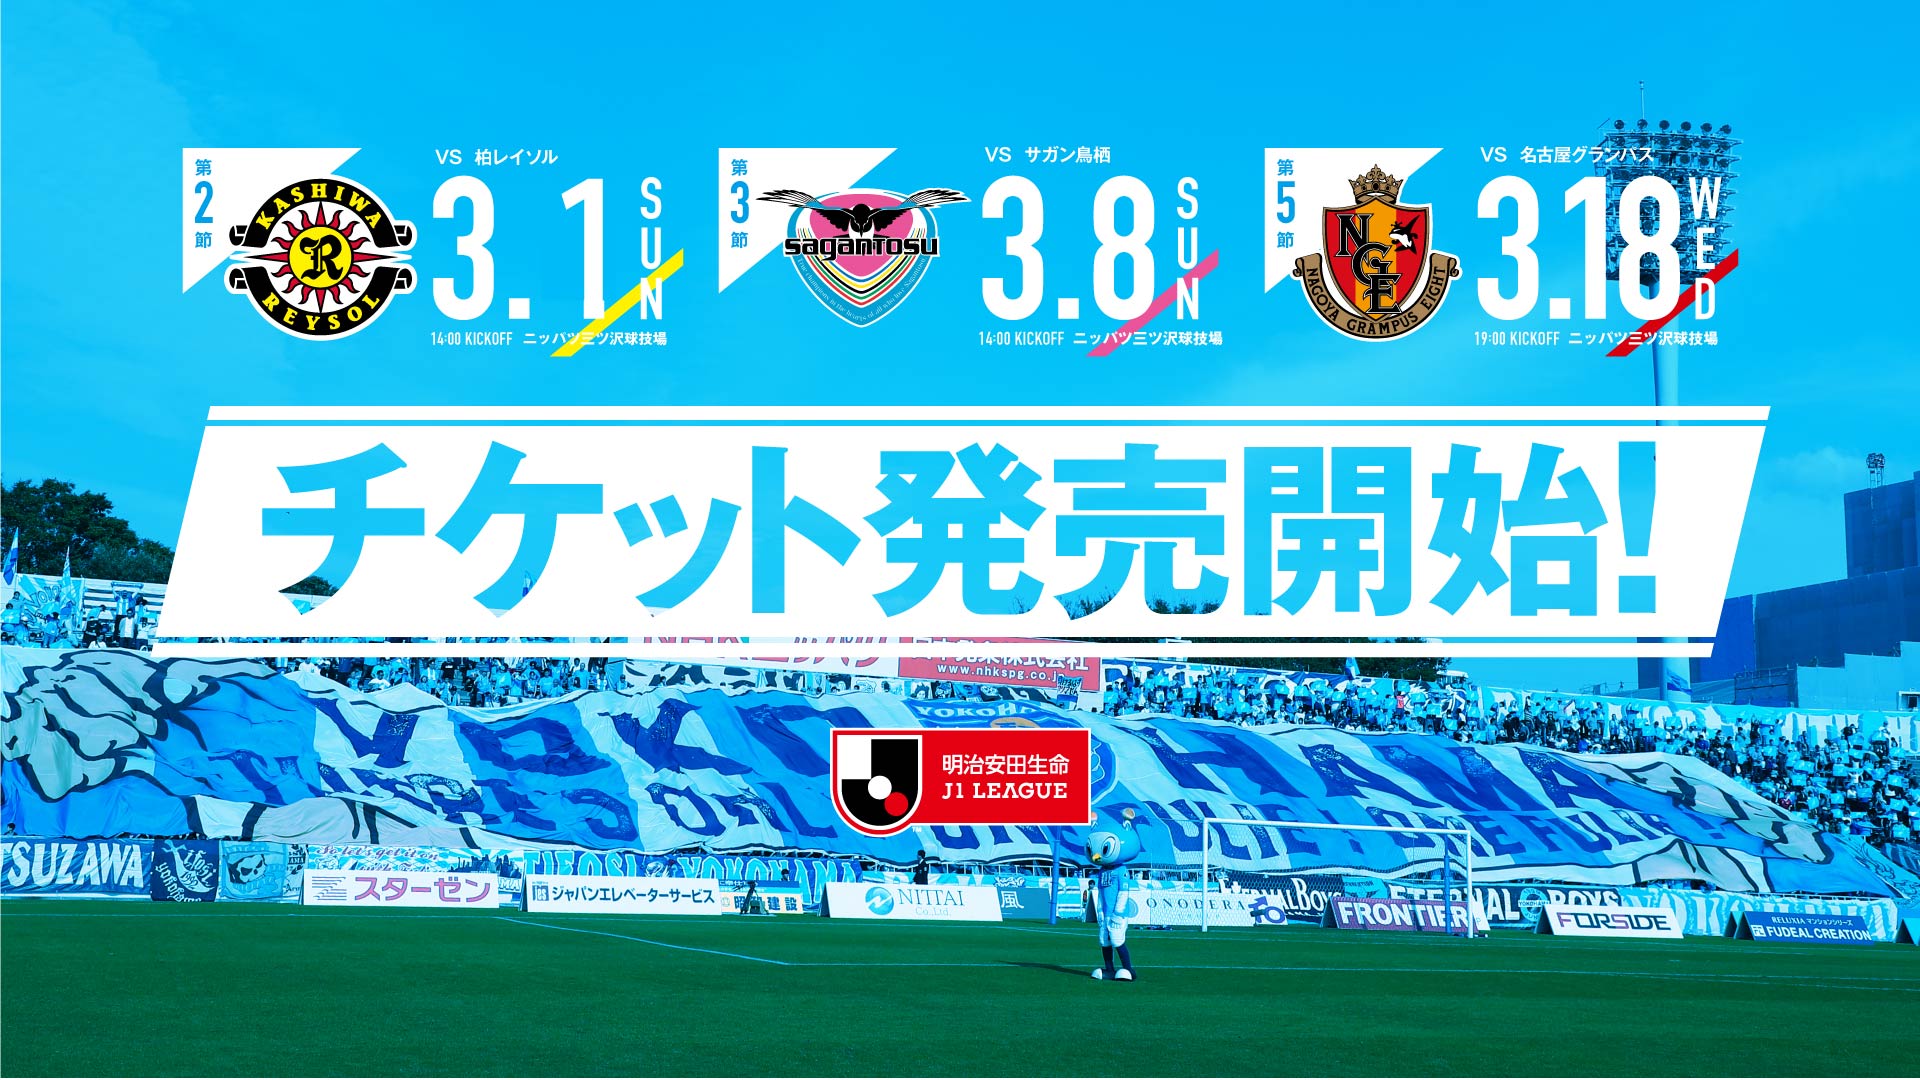 シーズン横浜fc 3月開催ホームゲームチケット販売開始のお知らせ 横浜fcオフィシャルウェブサイト